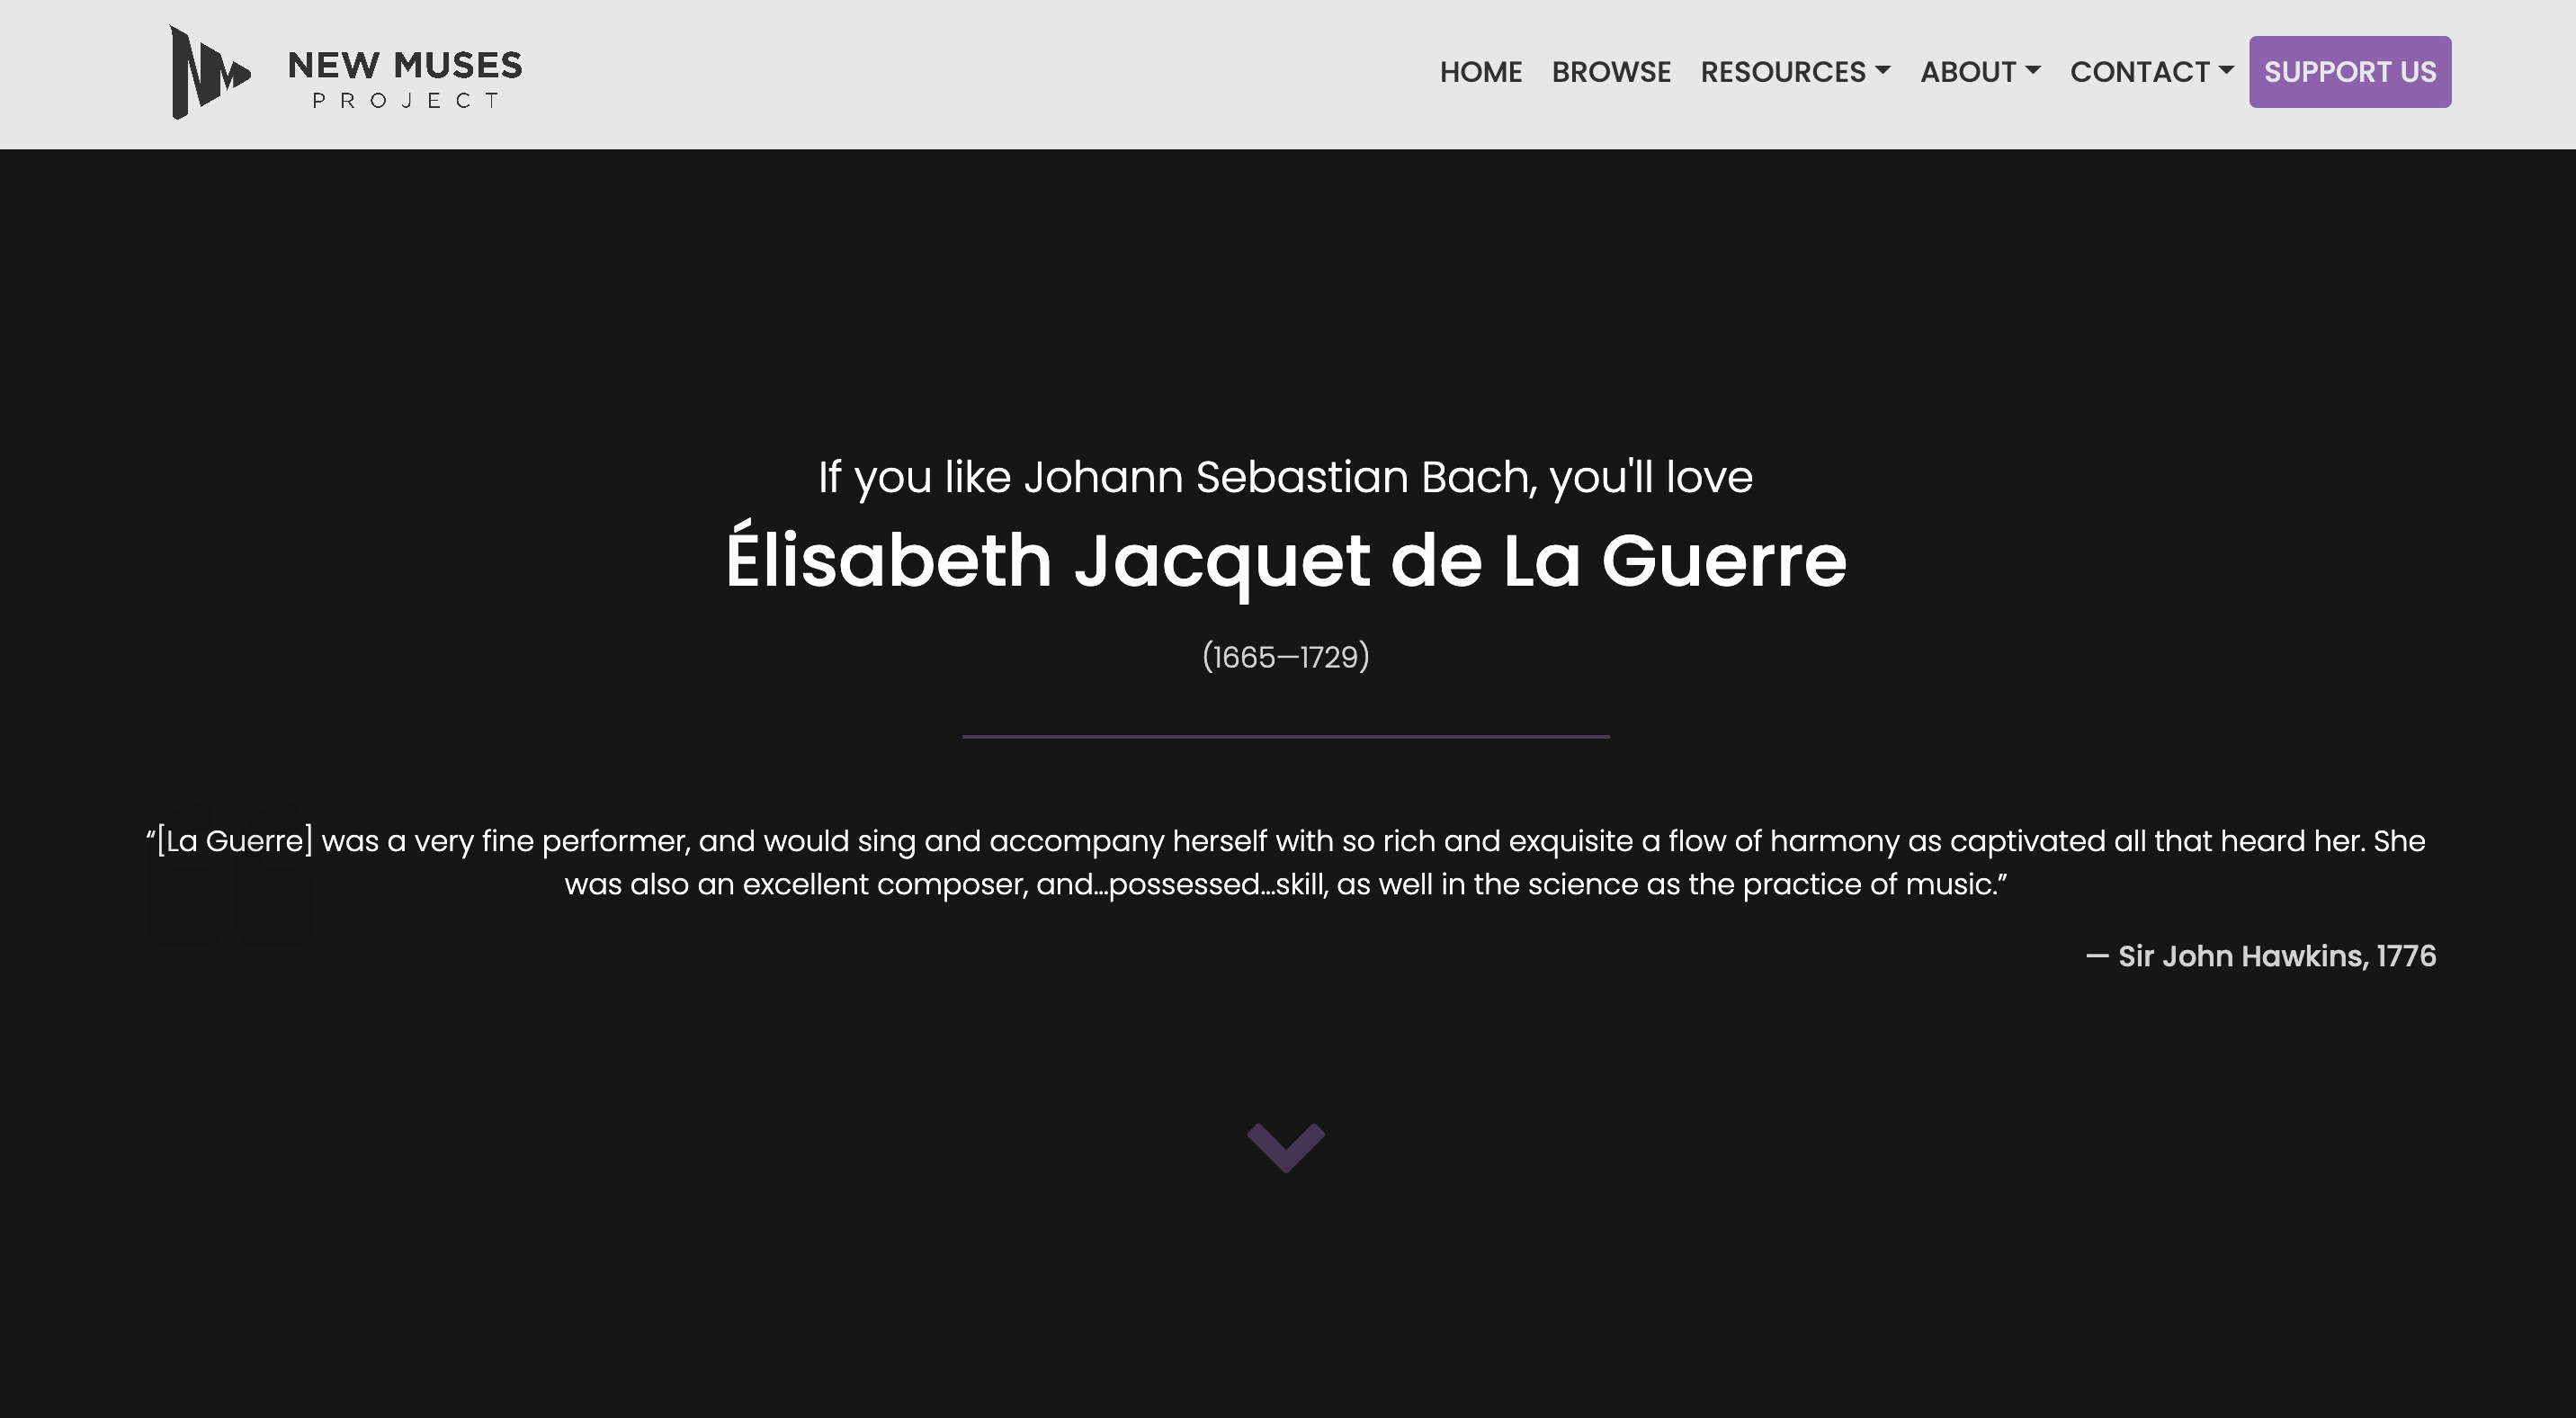 If you like Johann Sebastian Bach, you'll love Elisabeth Jacquet de La Guerre!